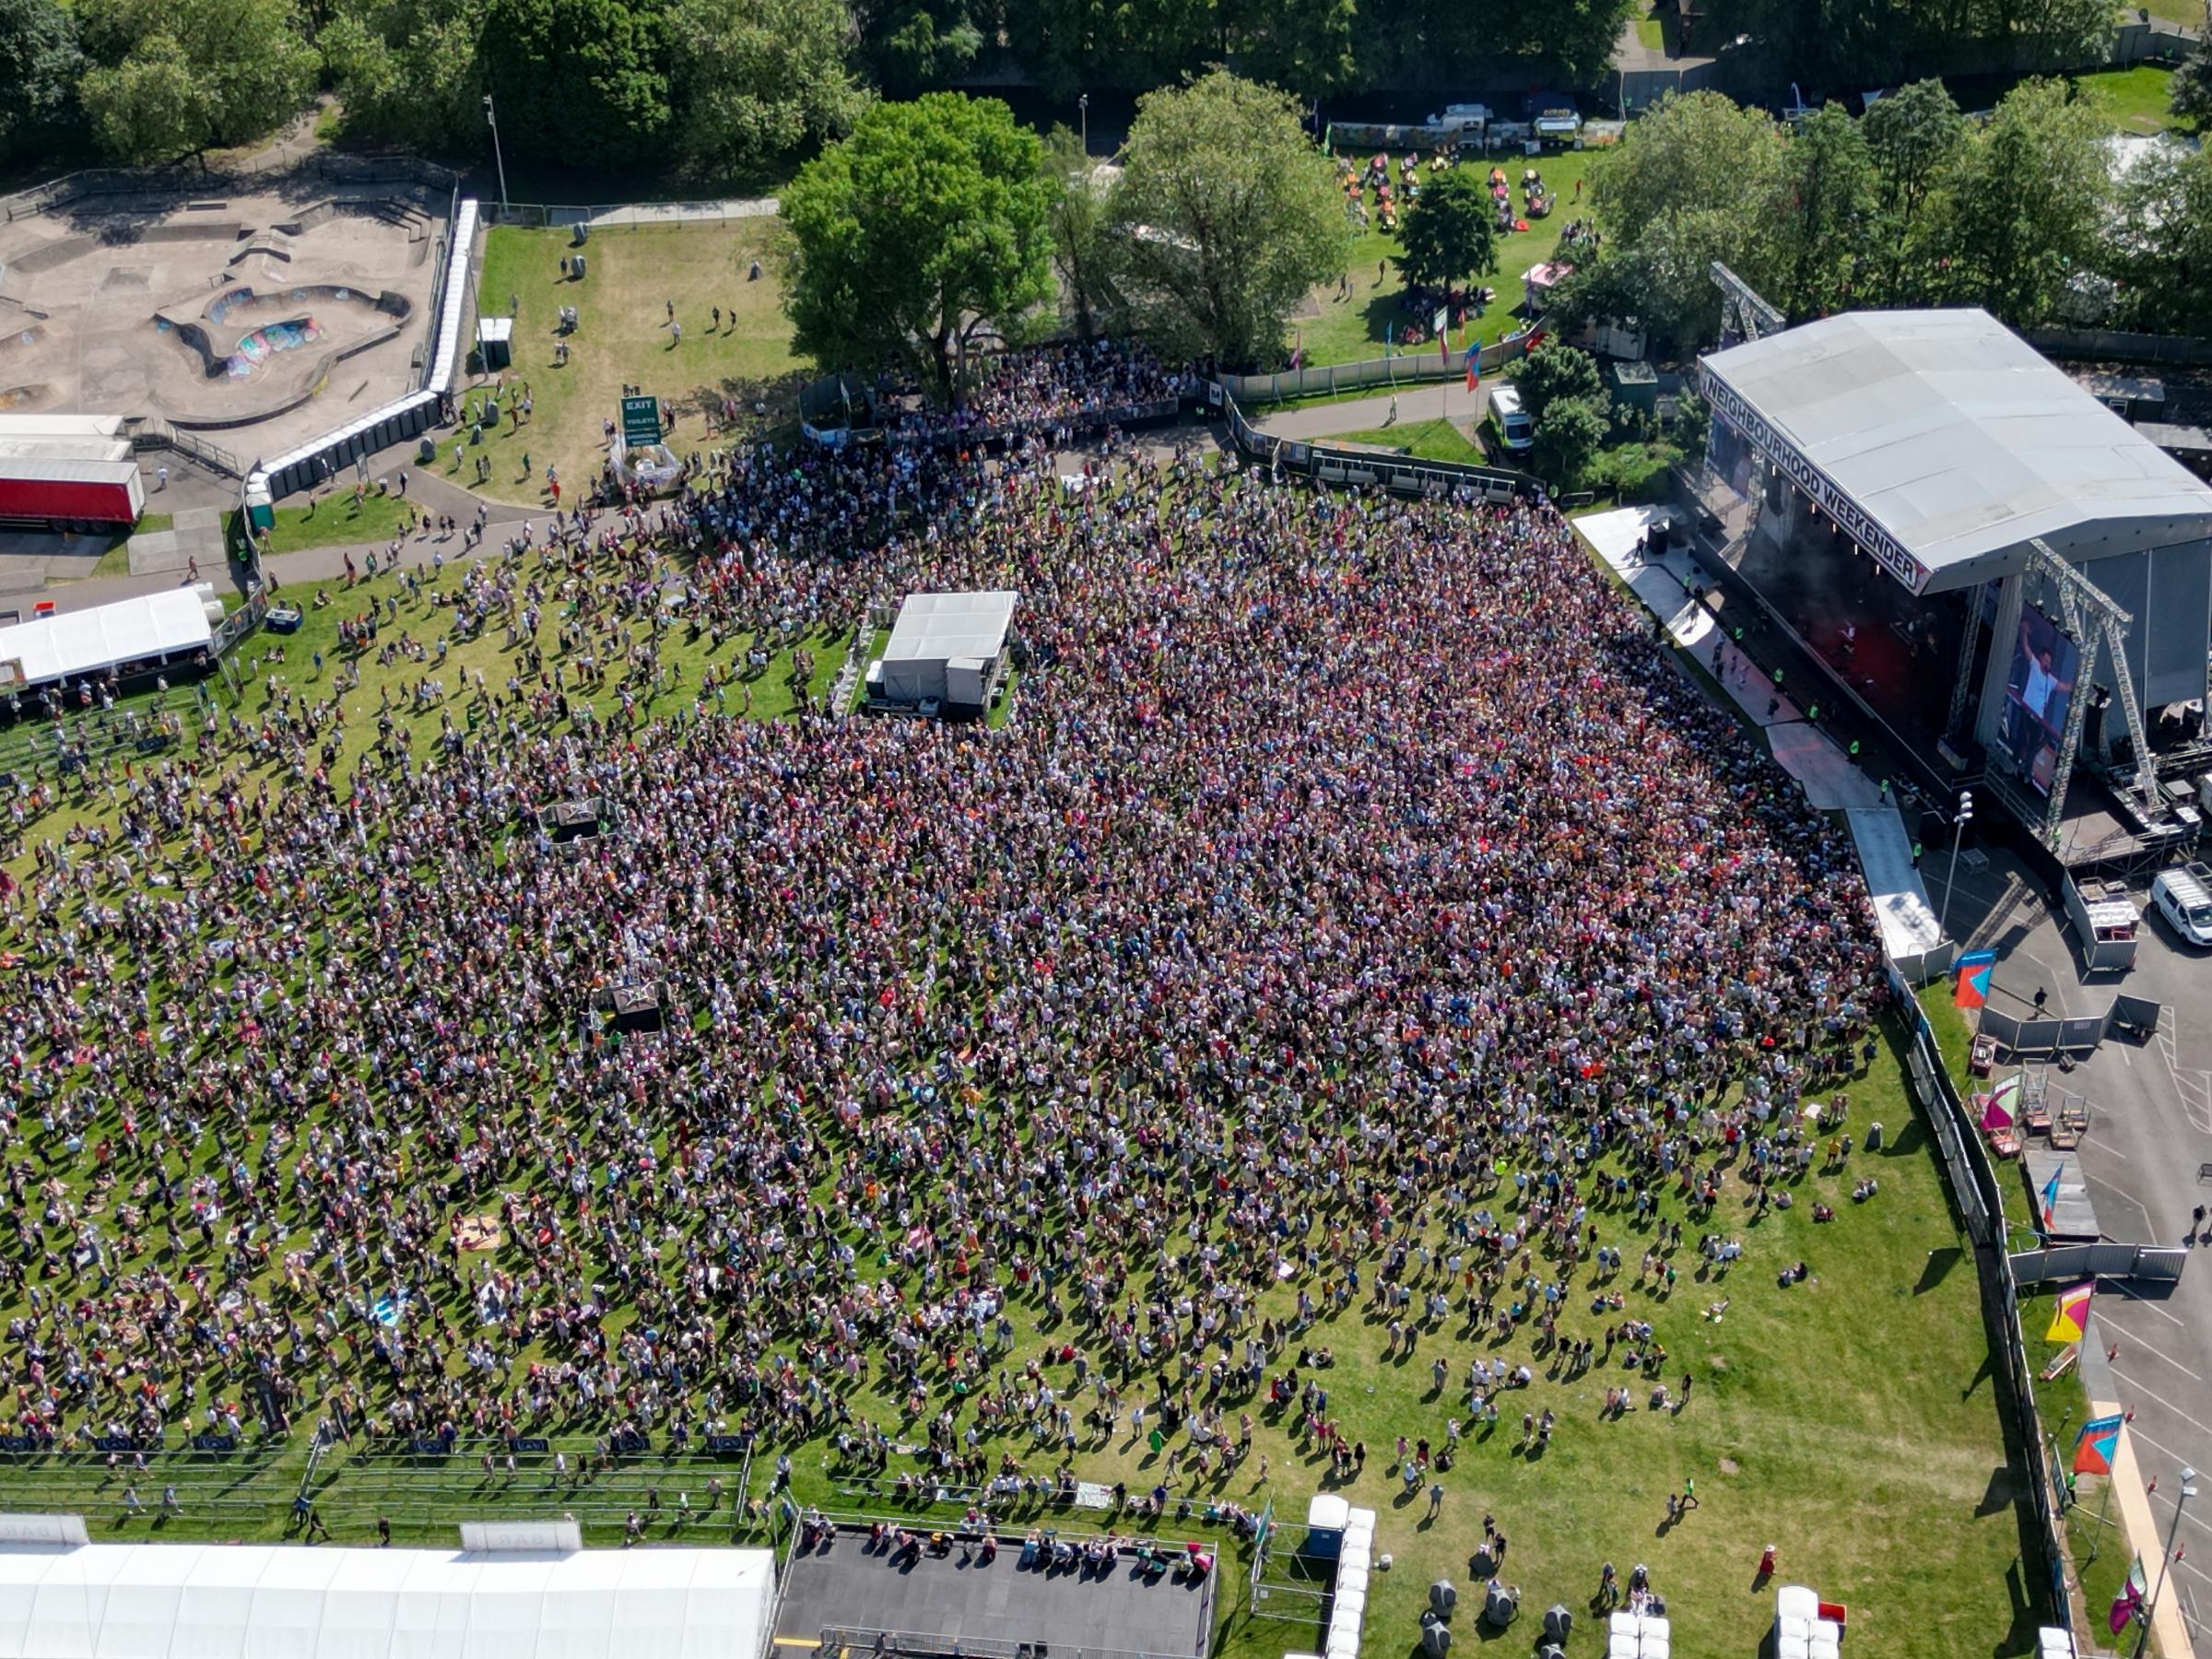 Aerial photos of Neighbourhood Weekender 2023 in Victoria Park